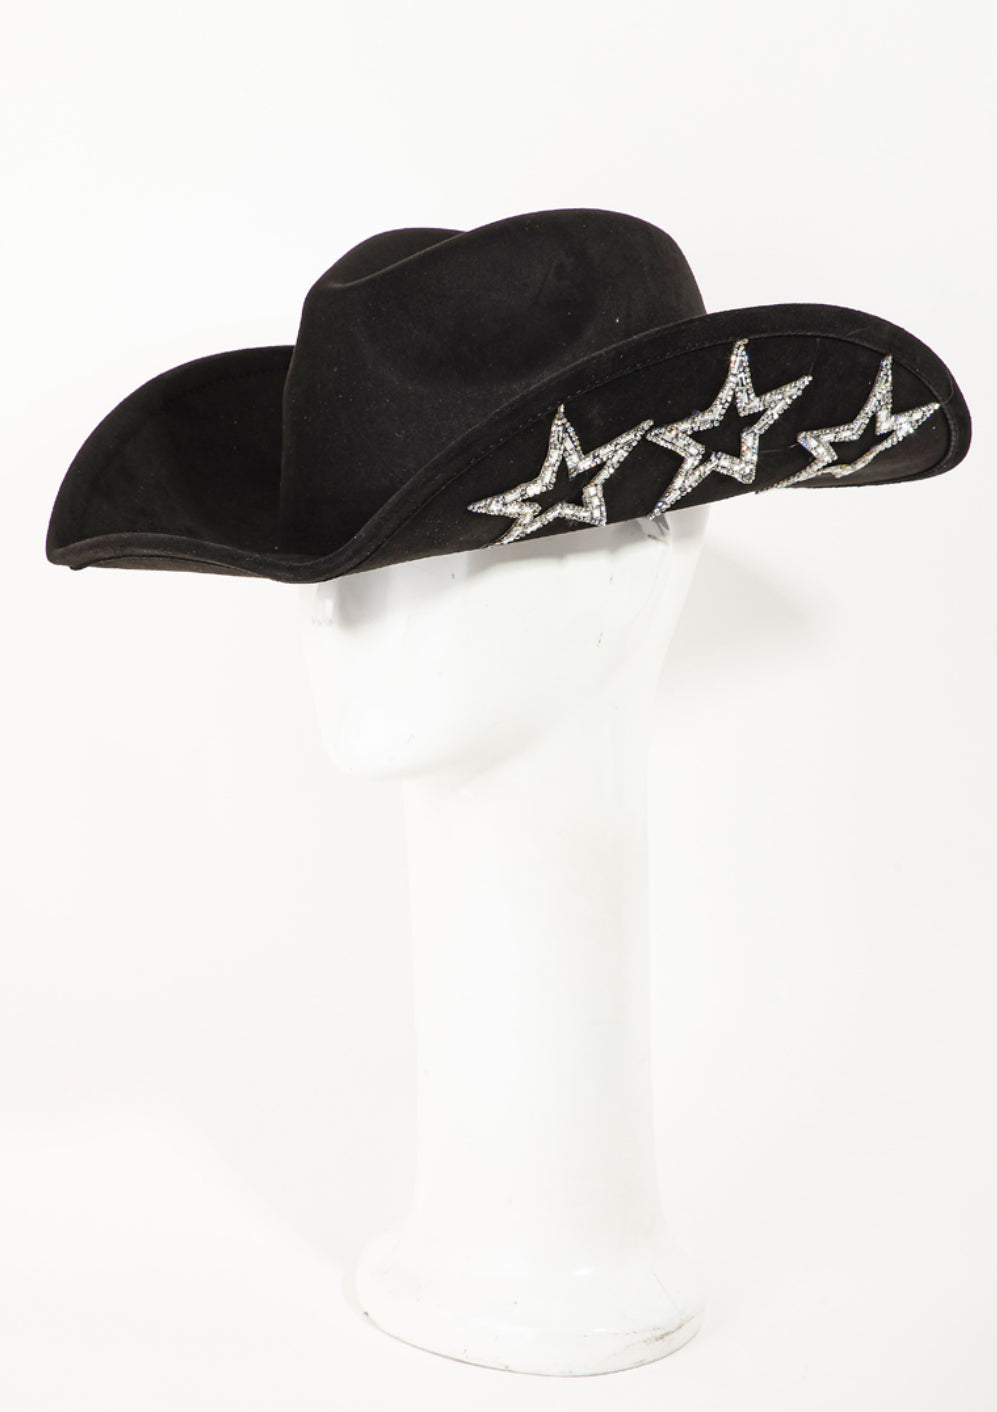 Rhinestone Star Western Hat